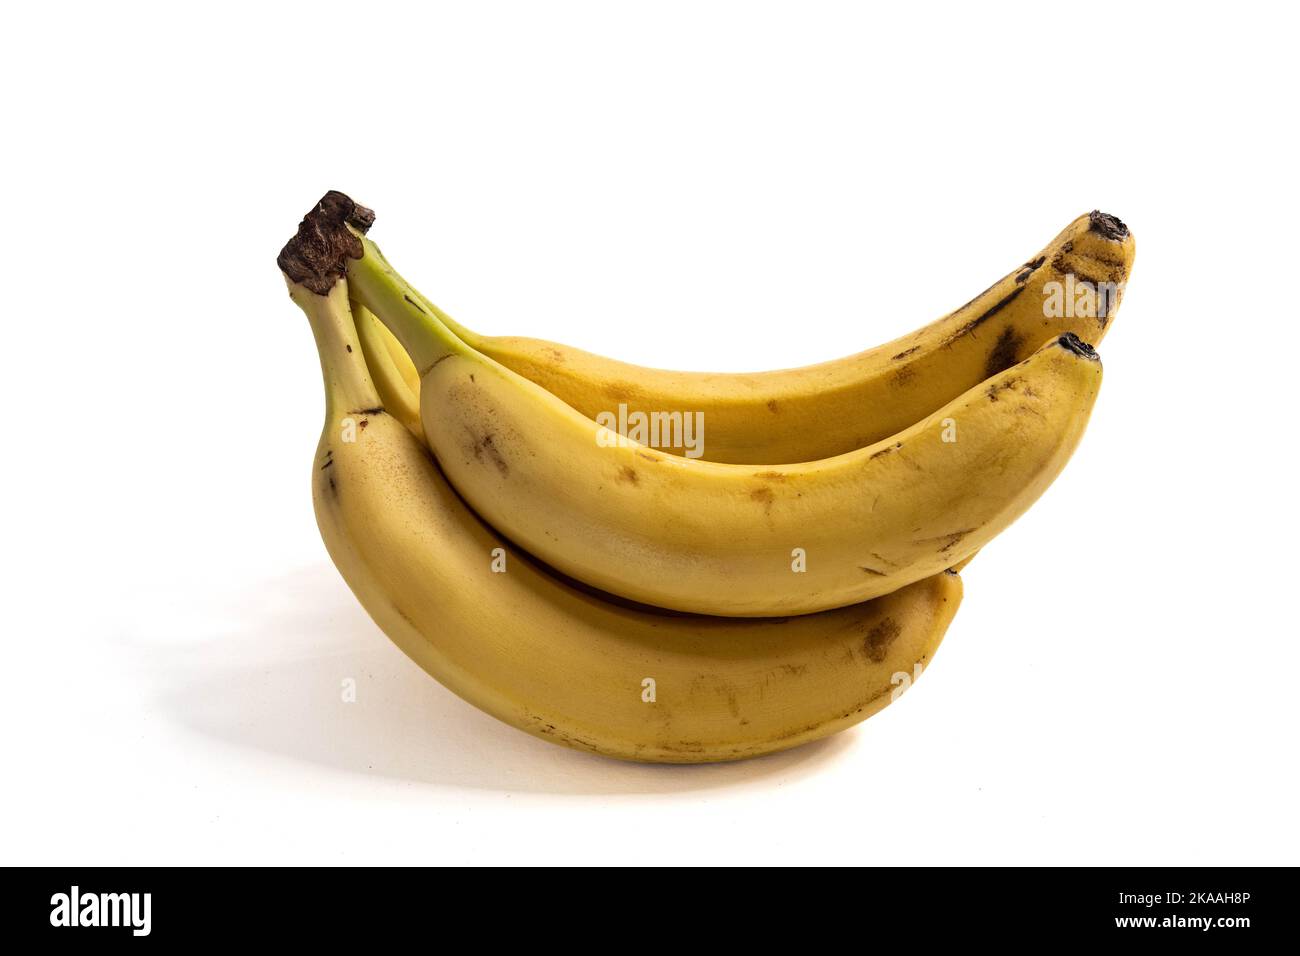 Ein Haufen reifer Bananen auf einer weißen Oberfläche Stockfoto